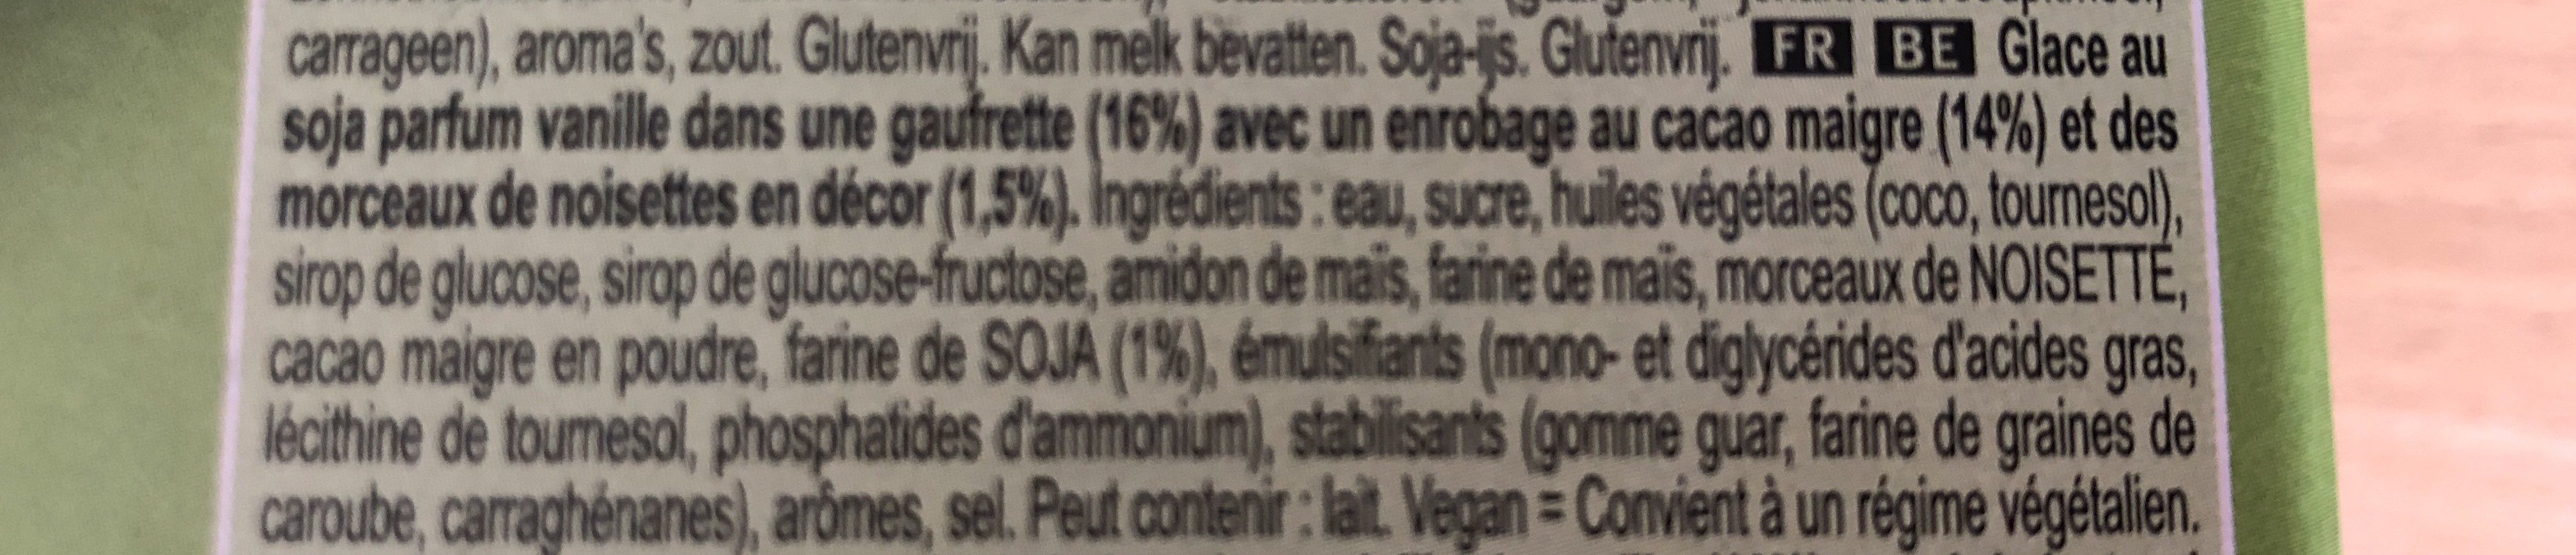 Cornetto au Soja sans gluten - Ingredients - fr